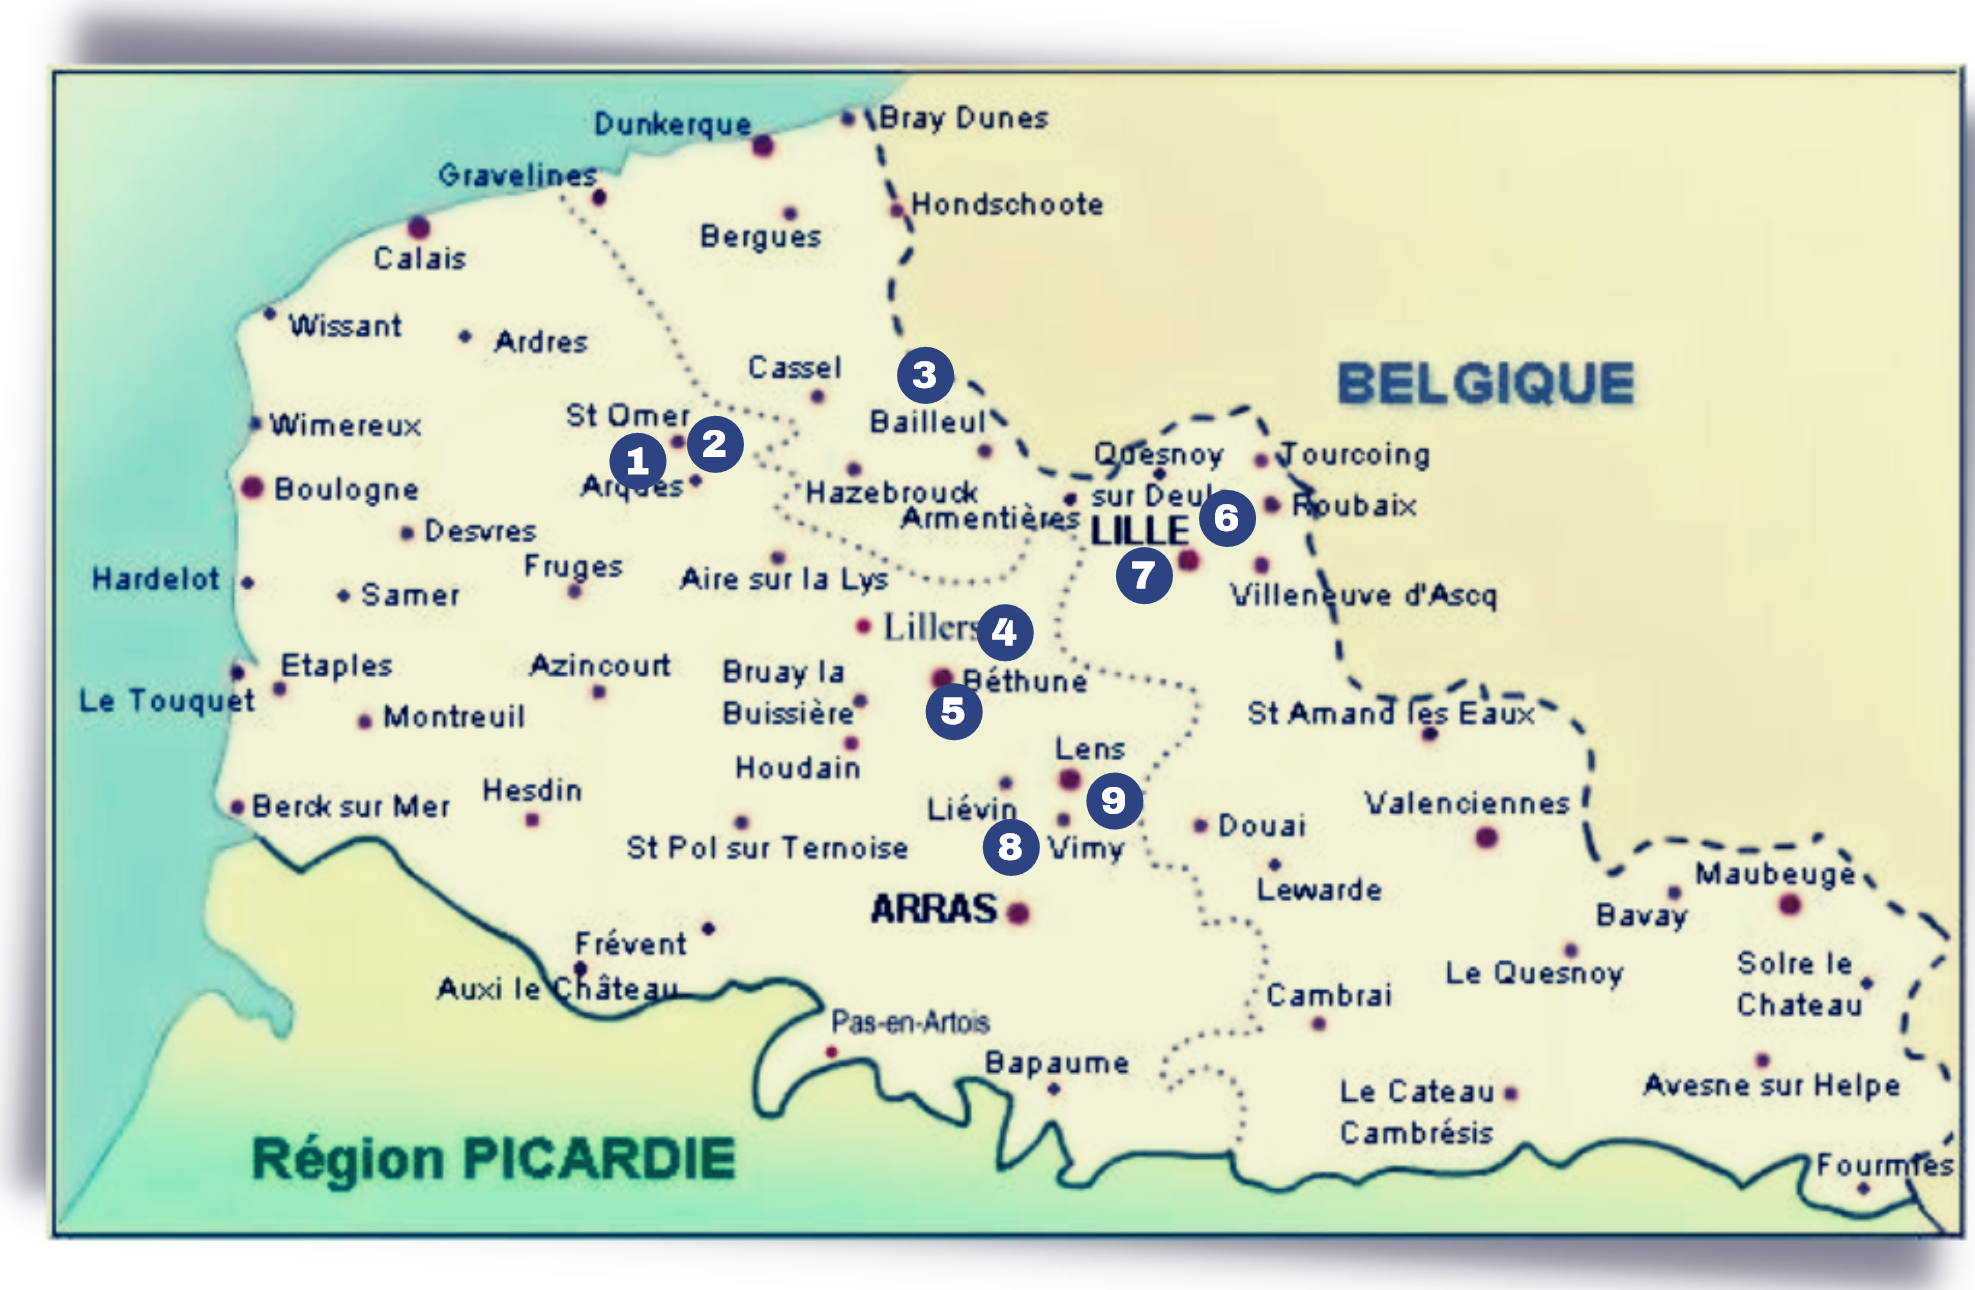 Région NORD & PAS DE CALAIS… Vers un Caminor2 – Mission France – Appel à Candidatures bénévoles